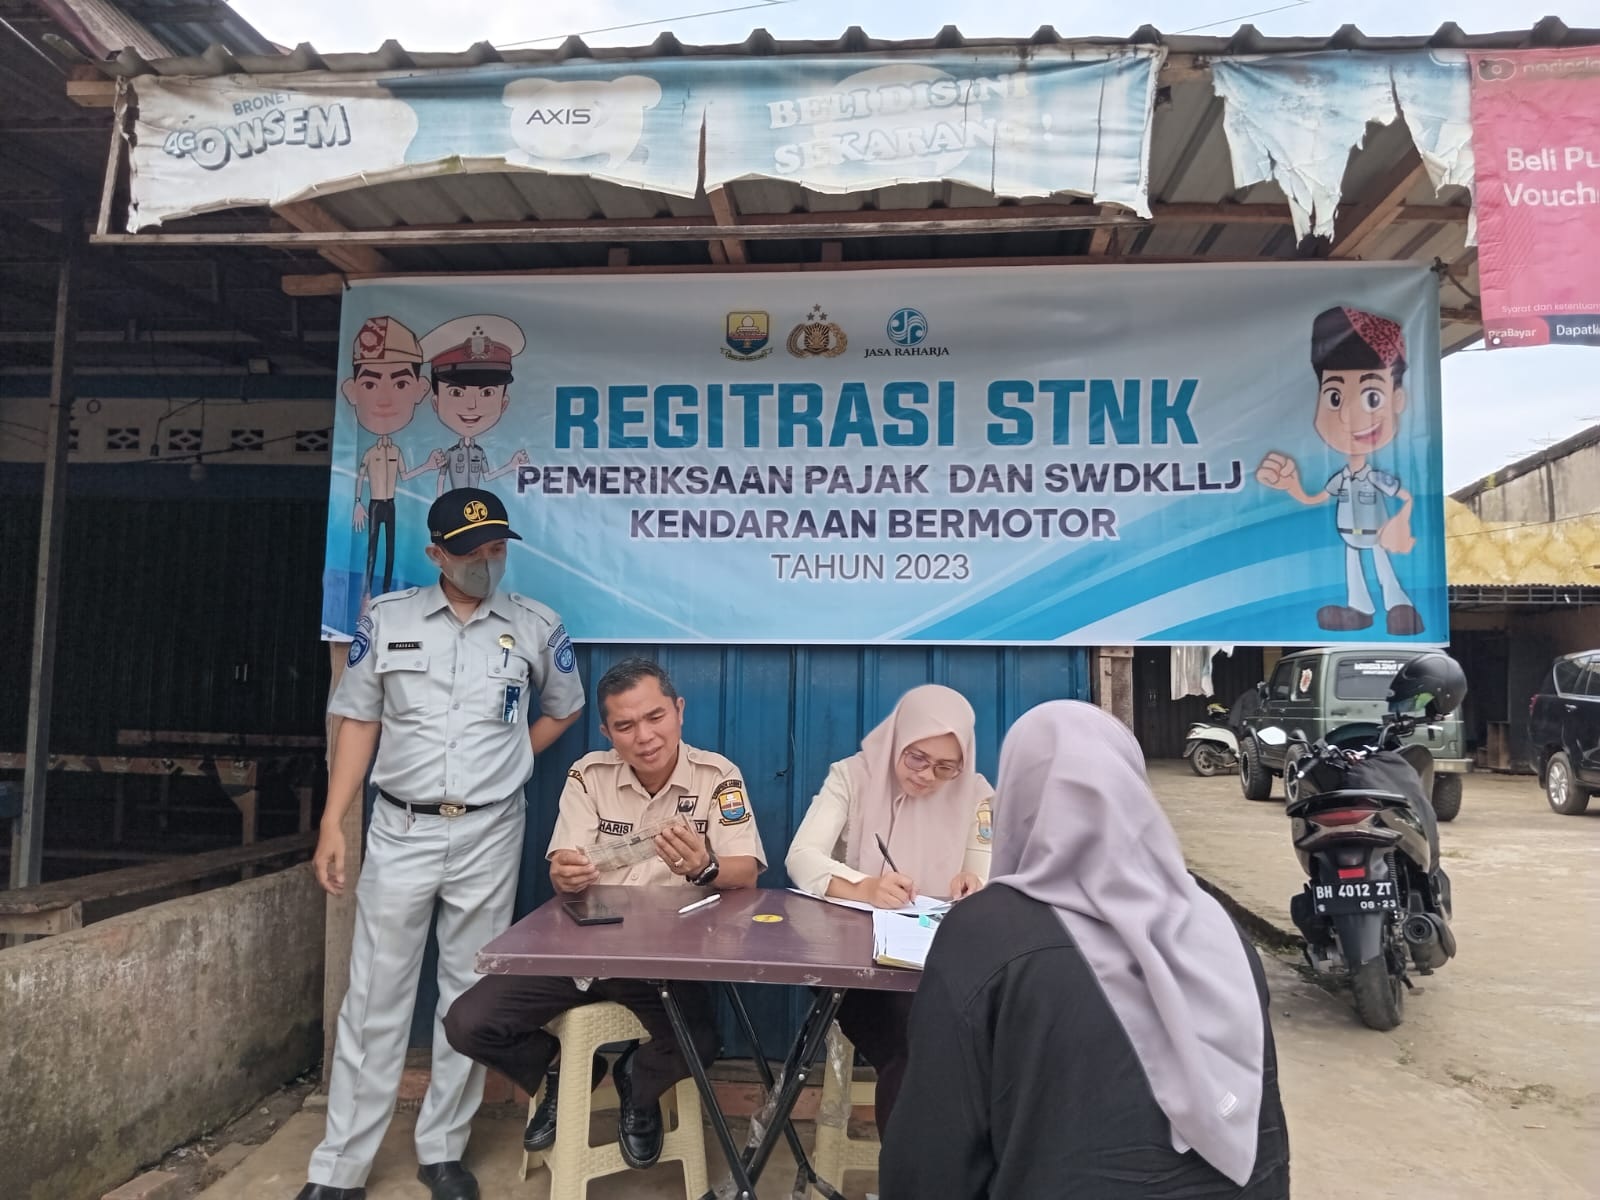  Tim Samsat Muaro Jambi Adakan razia, Ajak Registrasi STNK Hingga Cek Pajak dan SWDKLLJ Kendaraan Bermotor